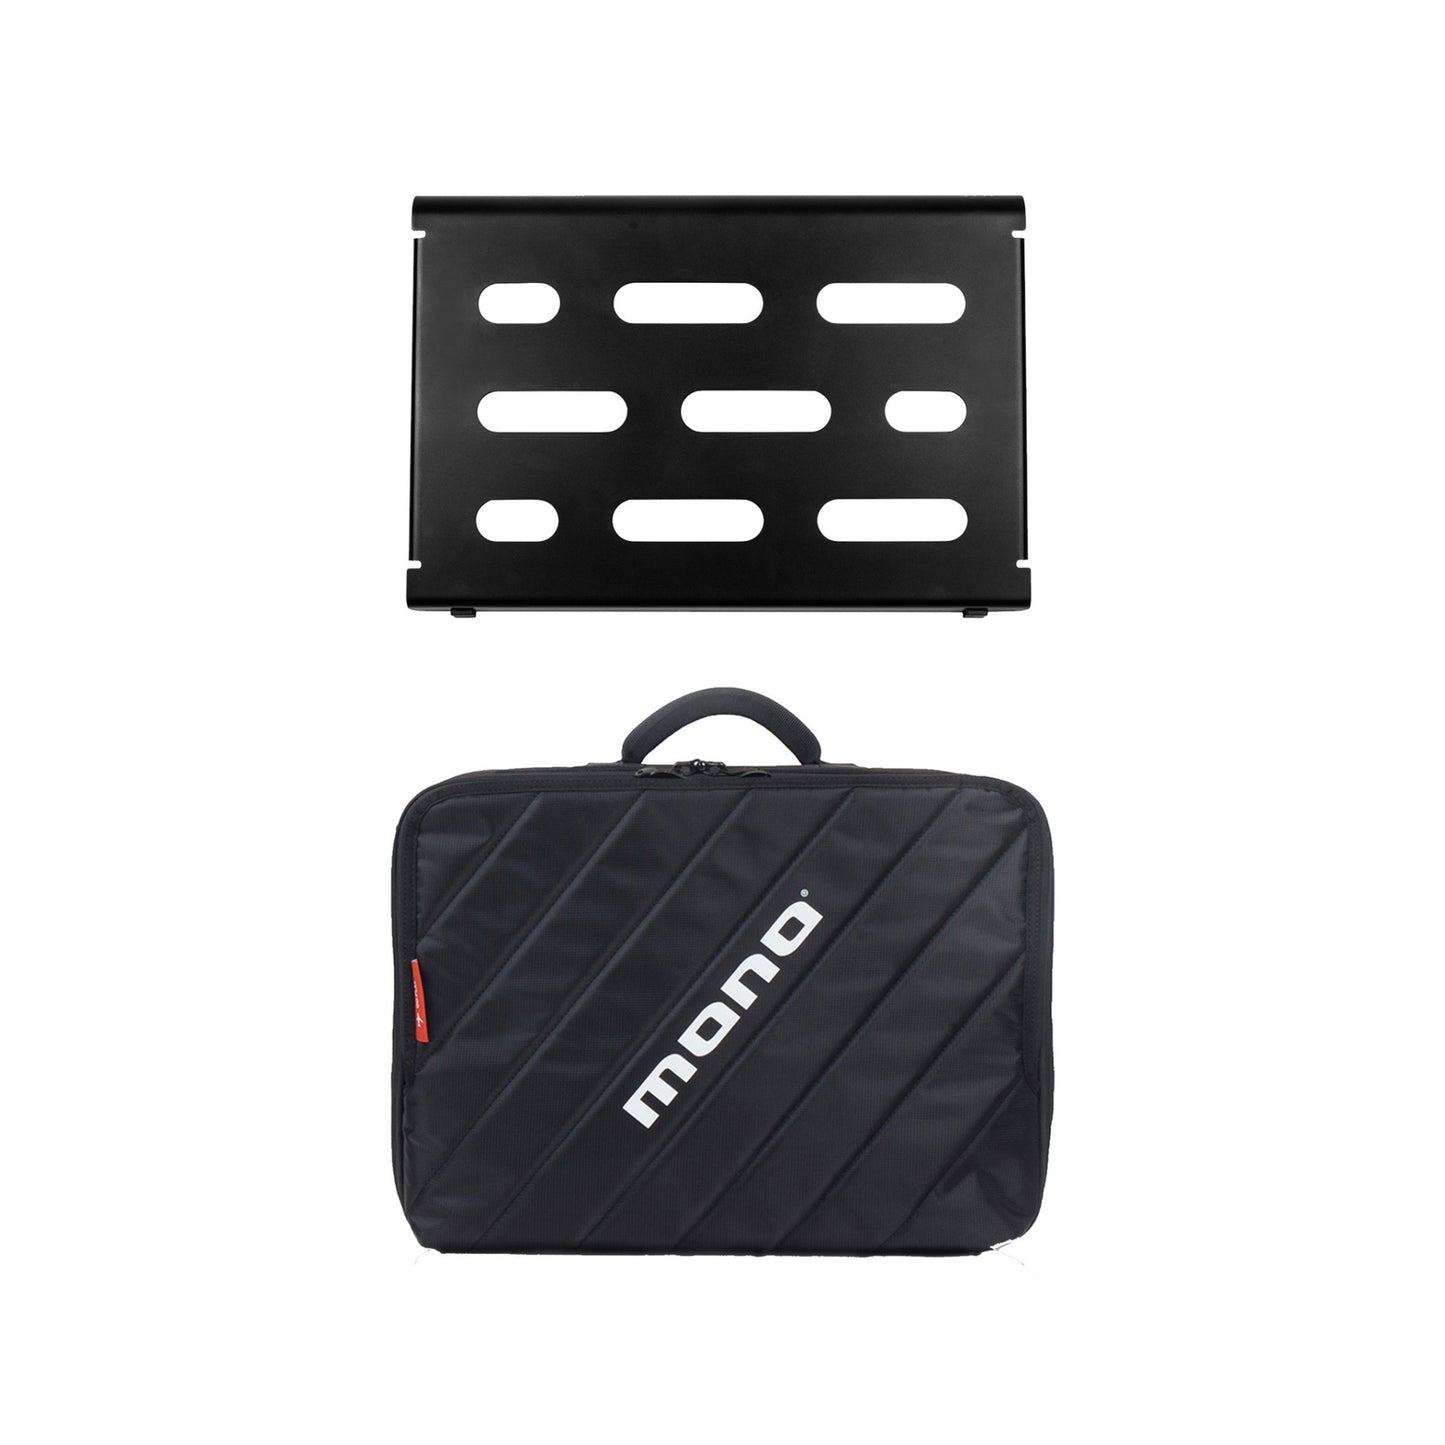 Mono Cases Pedalboard Small Black and Club Accessory Case 2.0 - Black